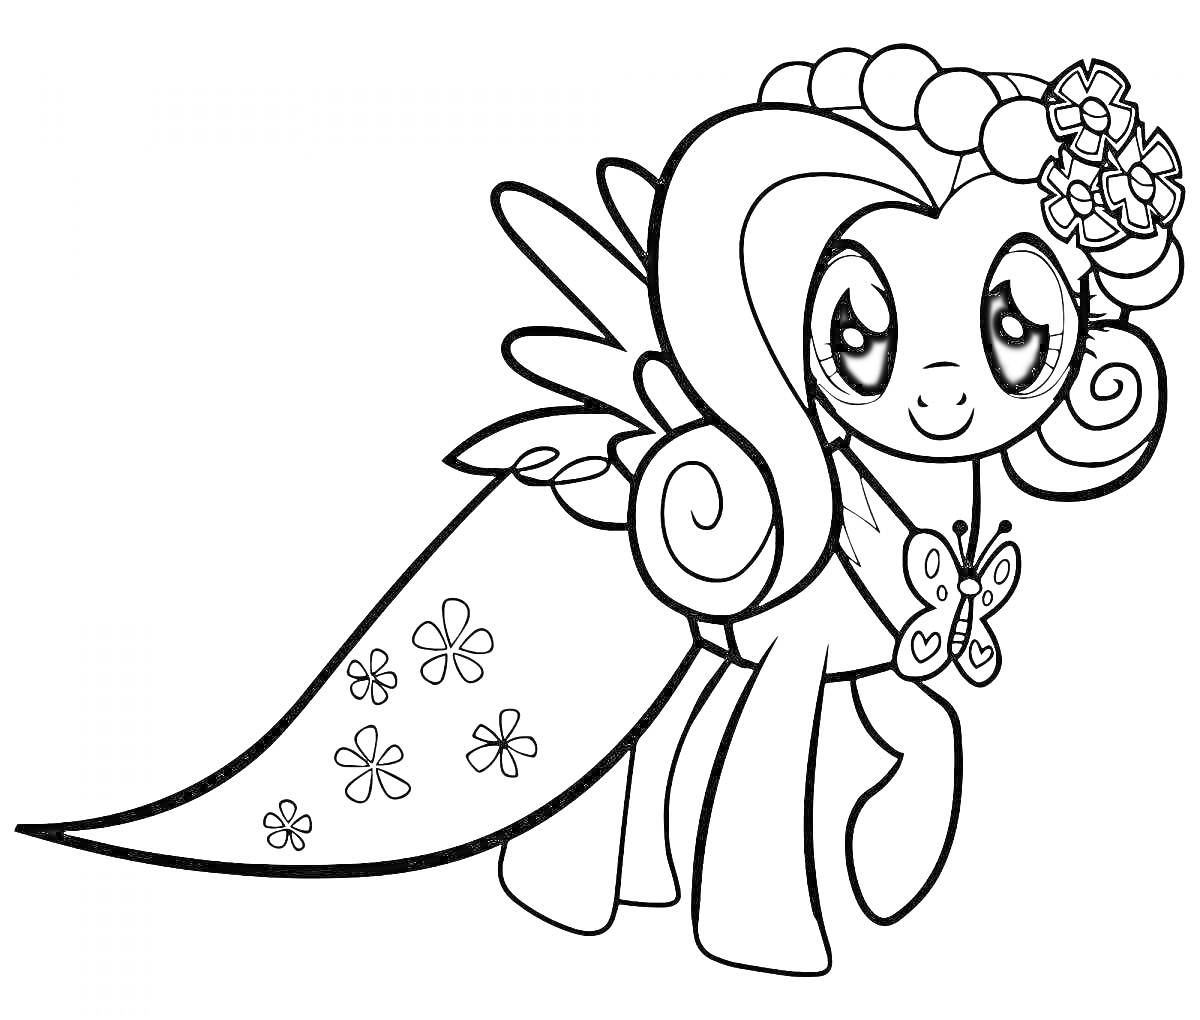 Раскраска Пони с крыльями, накидкой, цветочной короной и бабочкой на шее.